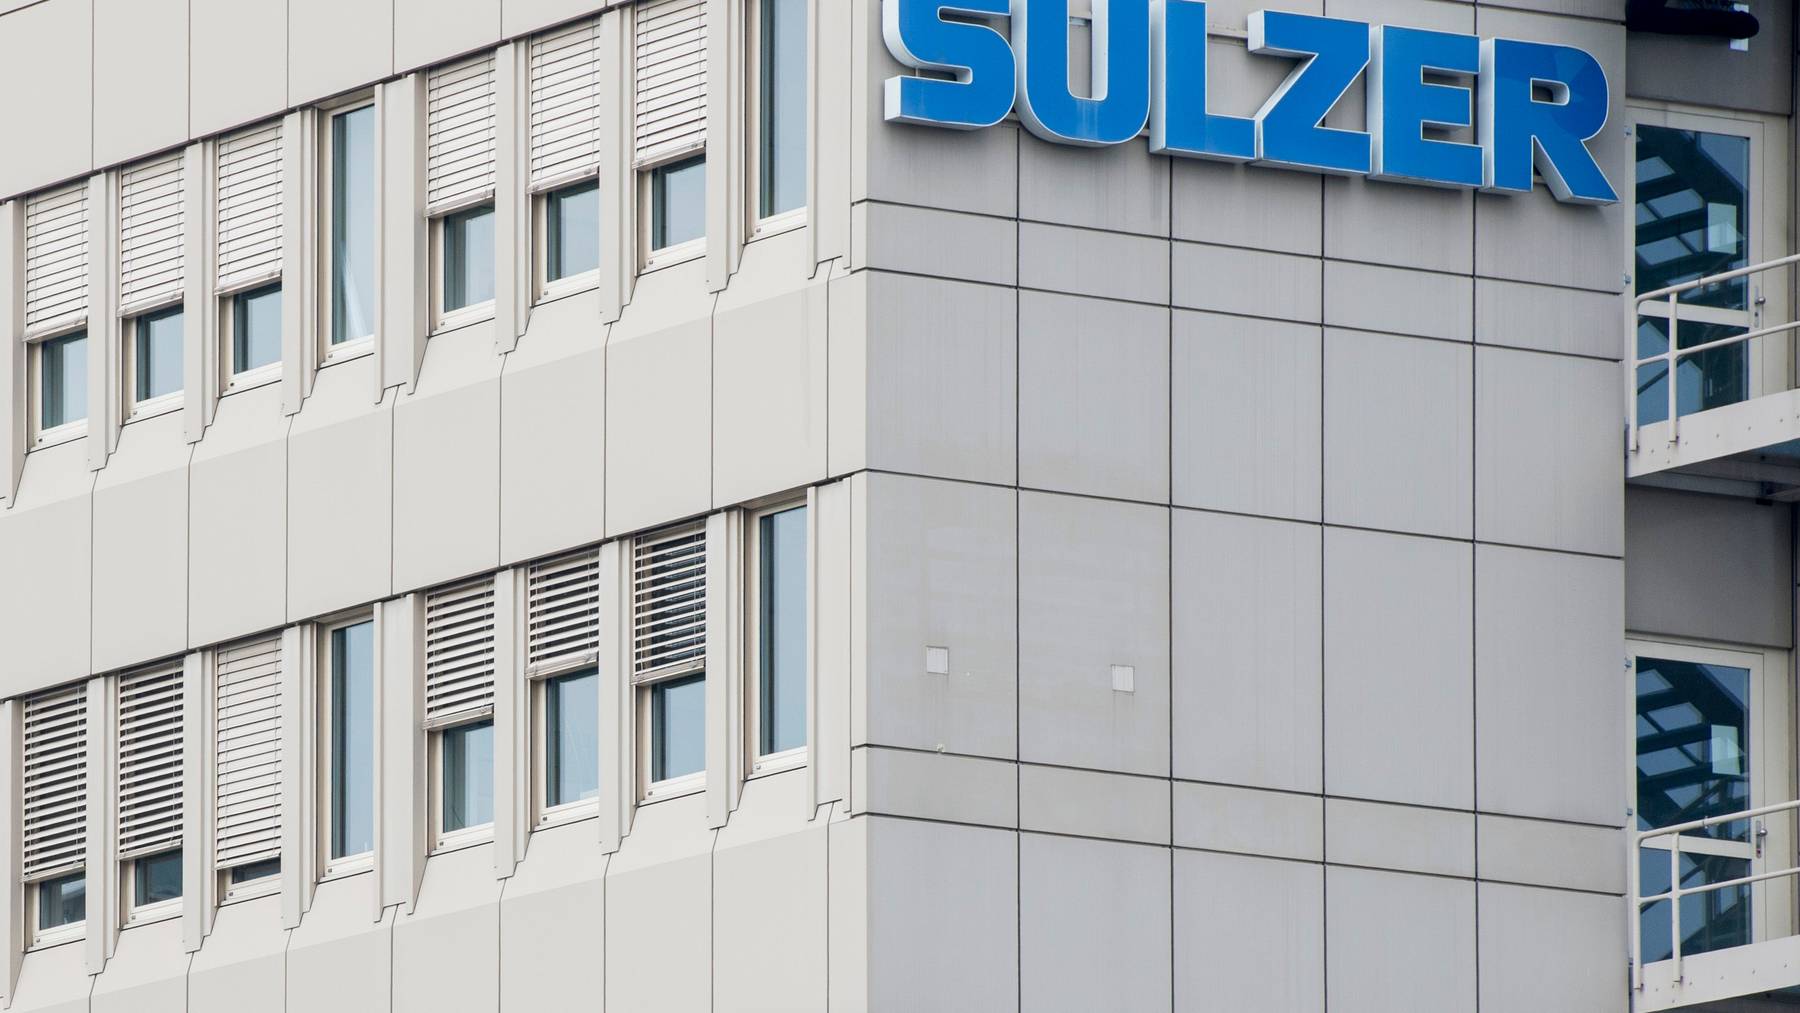 Sulzer hatte bereits im Frühjahr Restrukturierungen angekündigt. Nun ist klar, dass 55 Stellen an drei Standorten abgebaut werden.